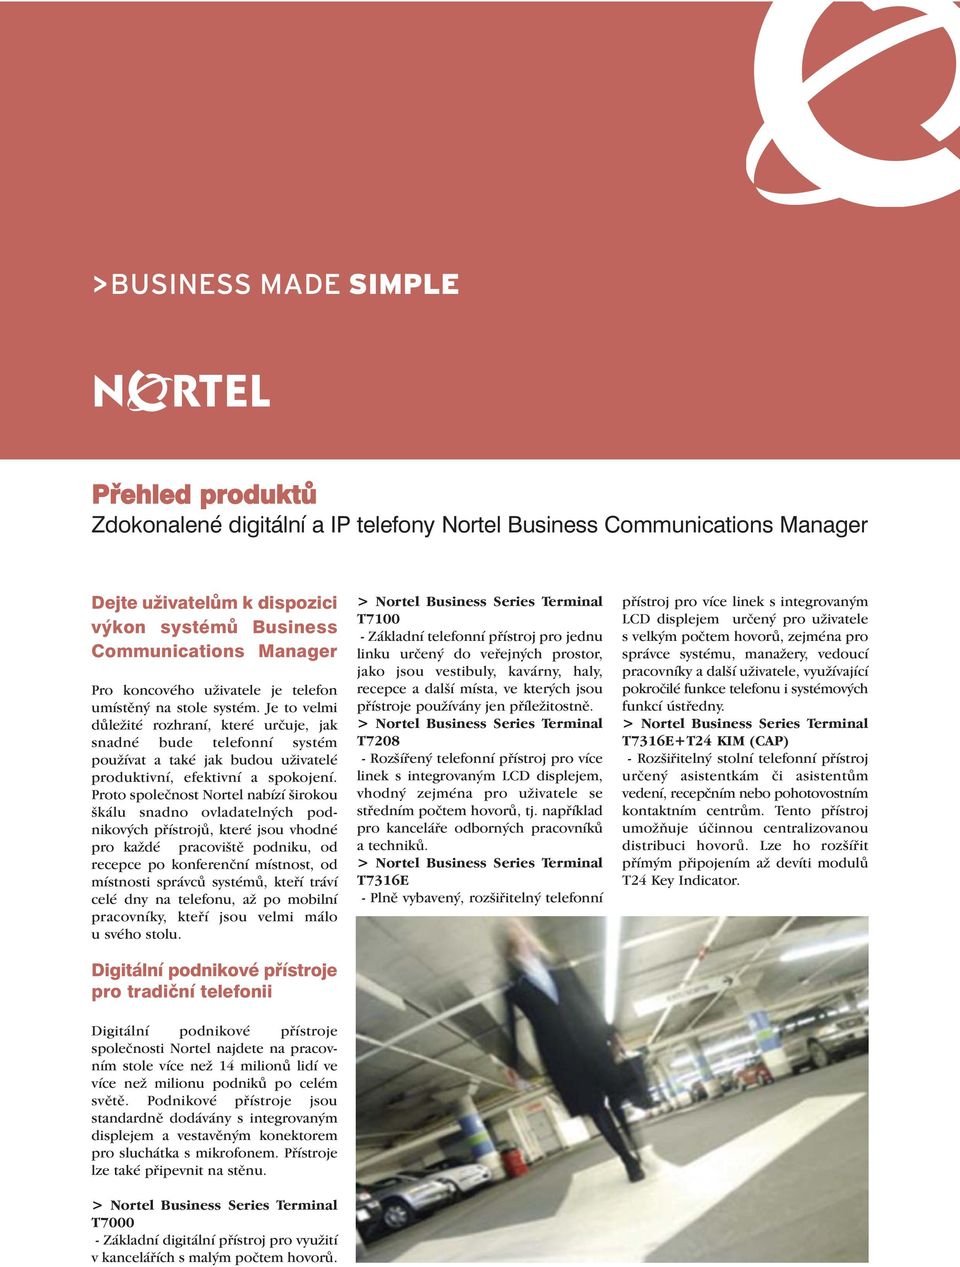 Proto společnost Nortel nabízí širokou škálu snadno ovladatelných podnikových přístrojů, které jsou vhodné pro každé pracoviště podniku, od recepce po konferenční místnost, od místnosti správců